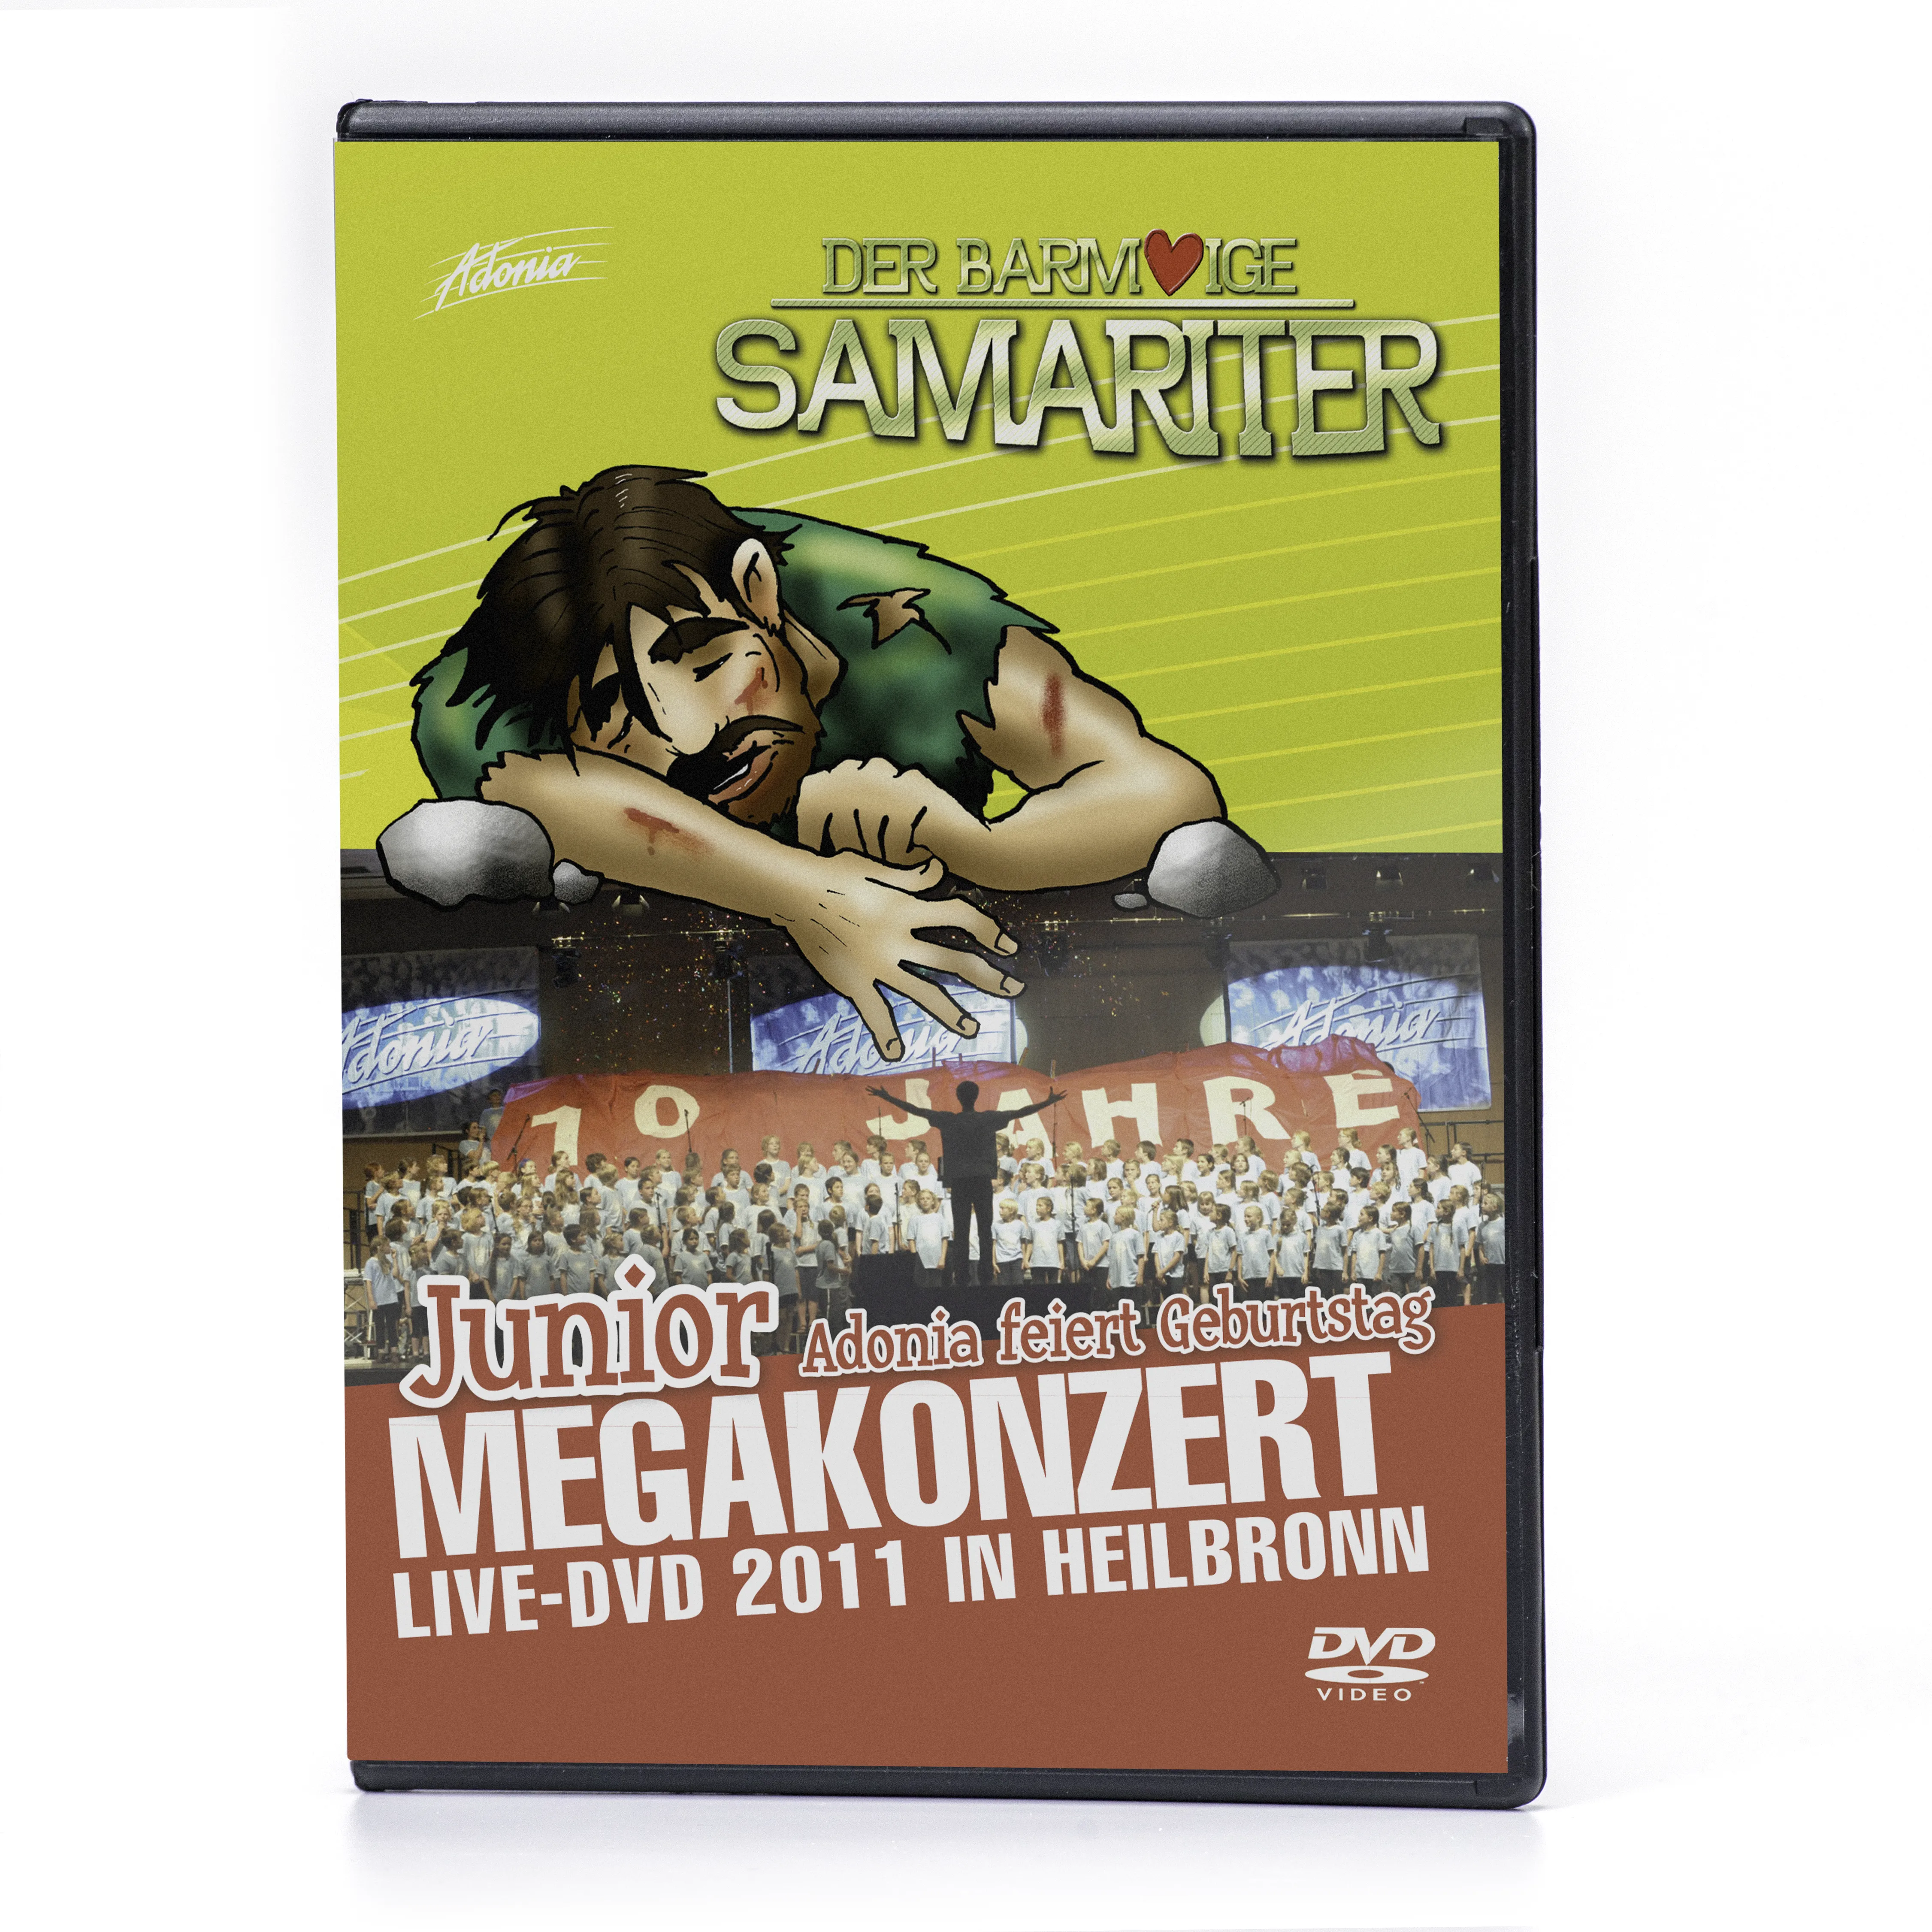 Live-Film (Megakonzert) - Der barmherzige Samariter